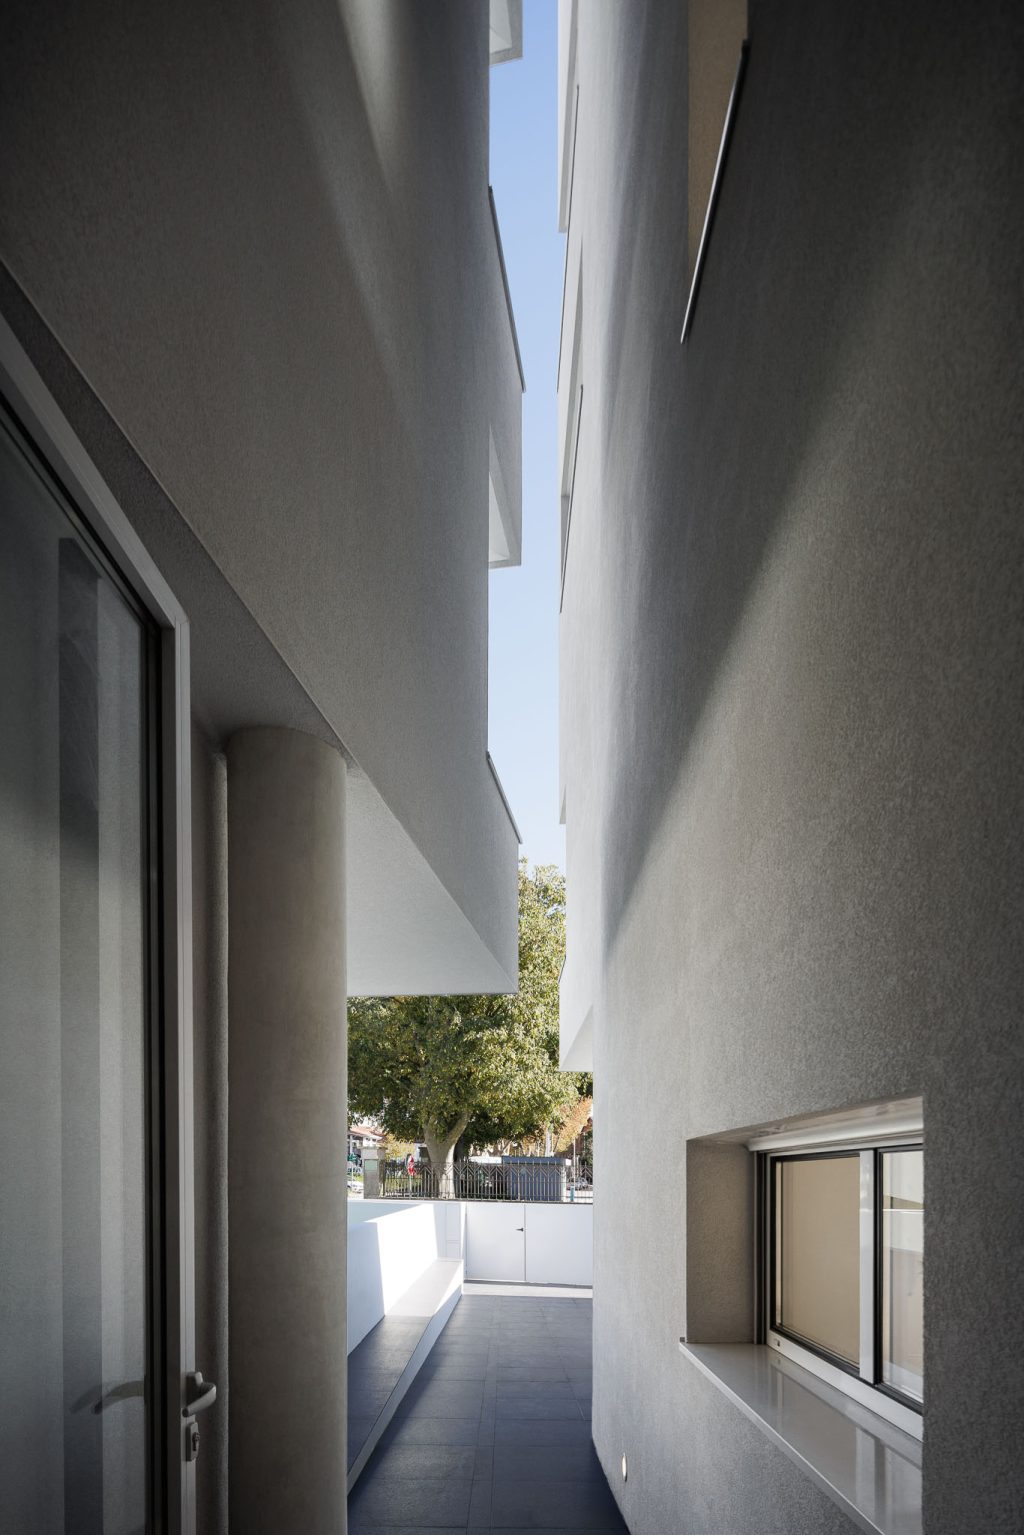 Nova Rio Housing architettura contemporanea che sfida le convenzioni. Antonio Paulo Marques